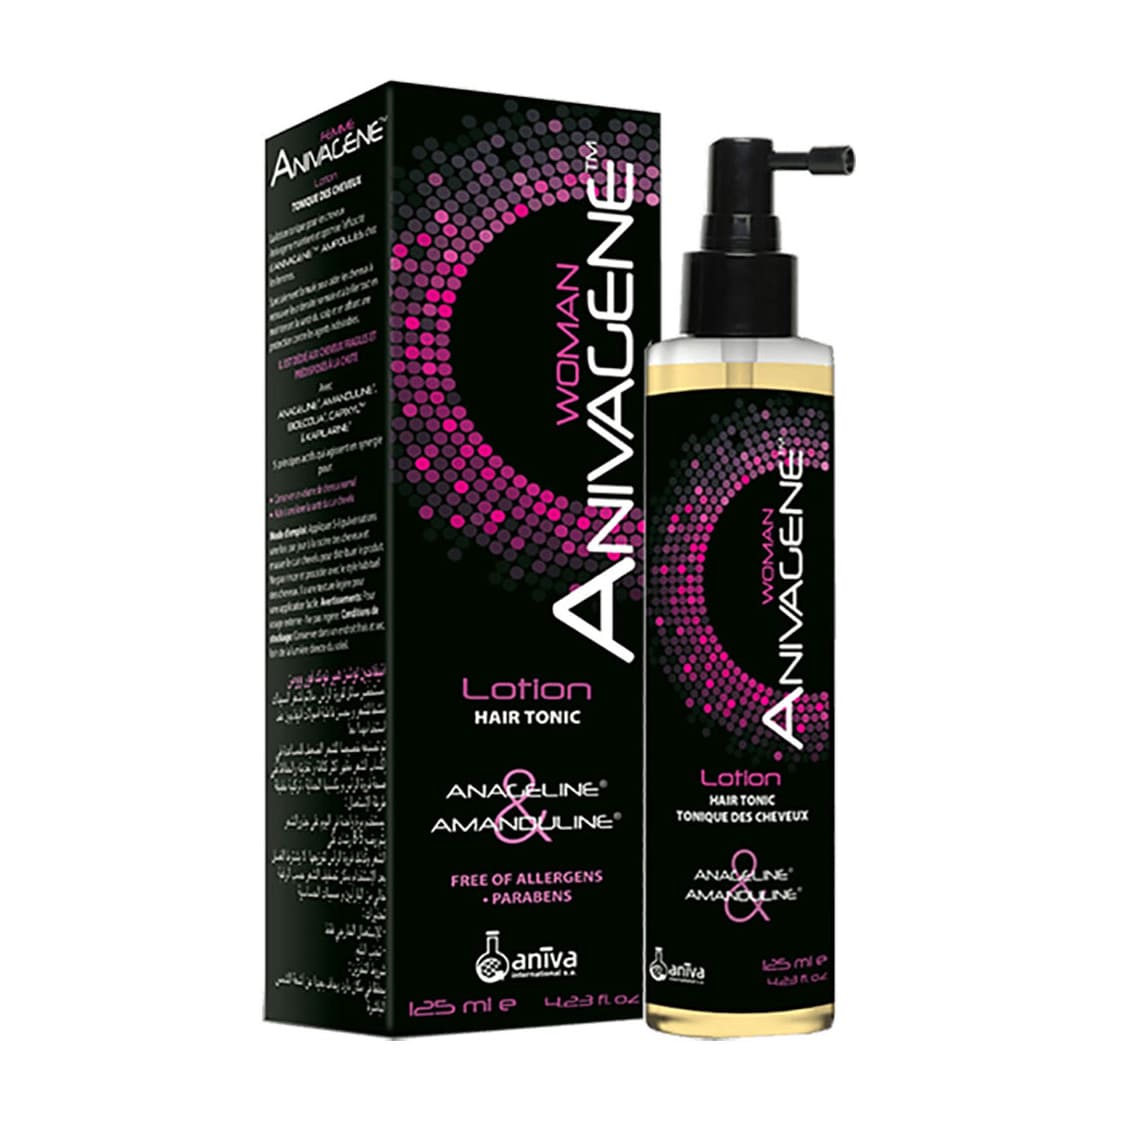 Anivagene Hair Tonic Lotion For Women - 125ml - Bloom Pharmacy